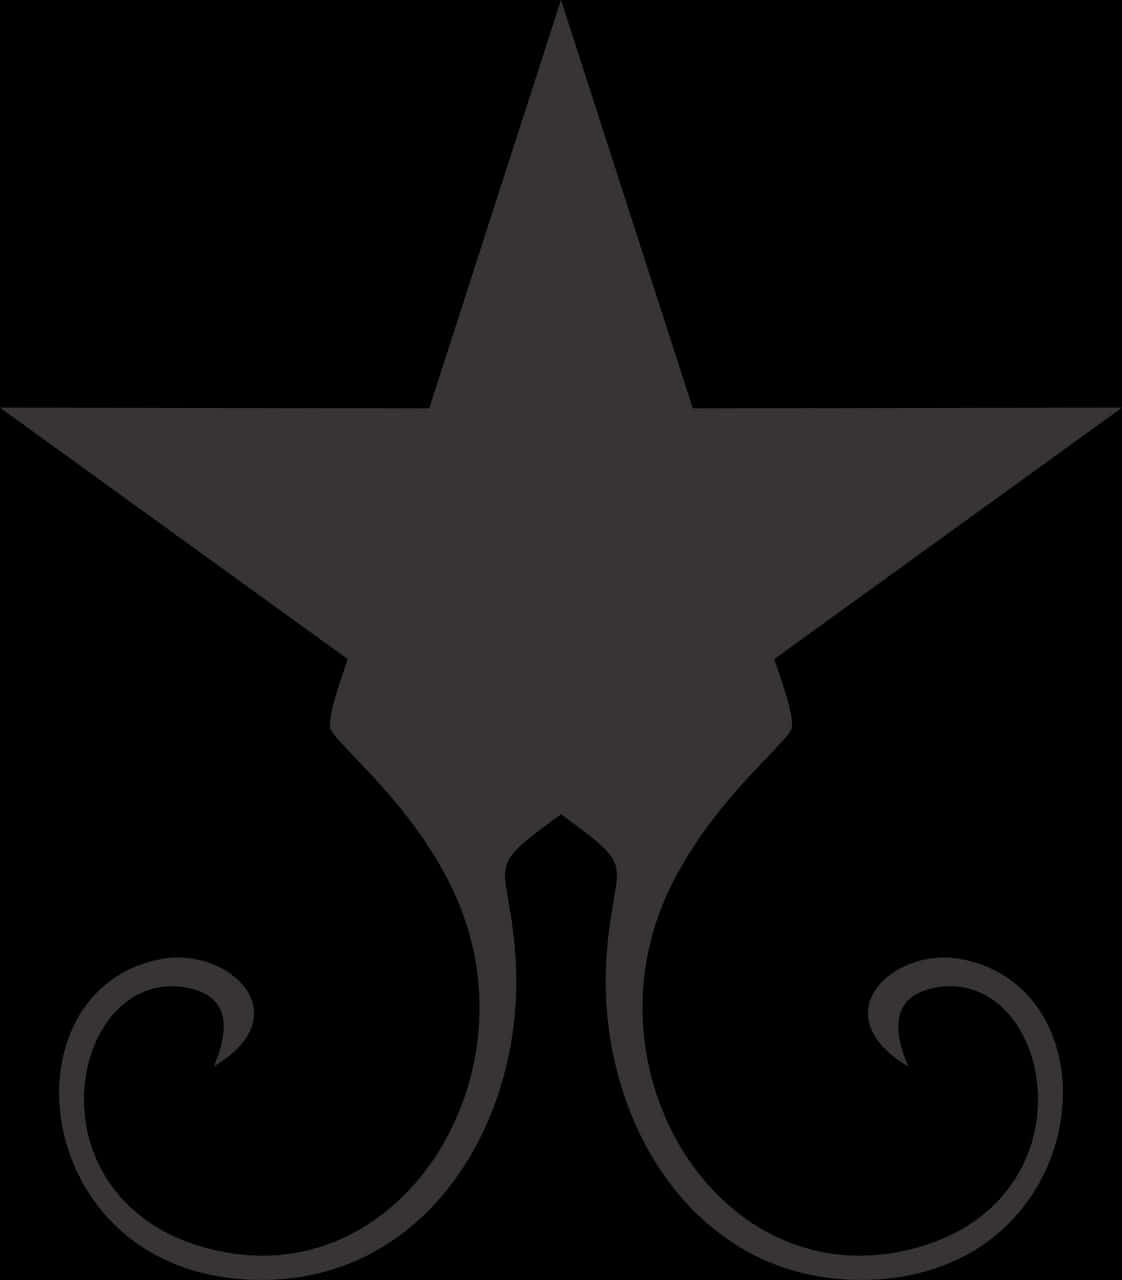 Elegant Black Star Design PNG image